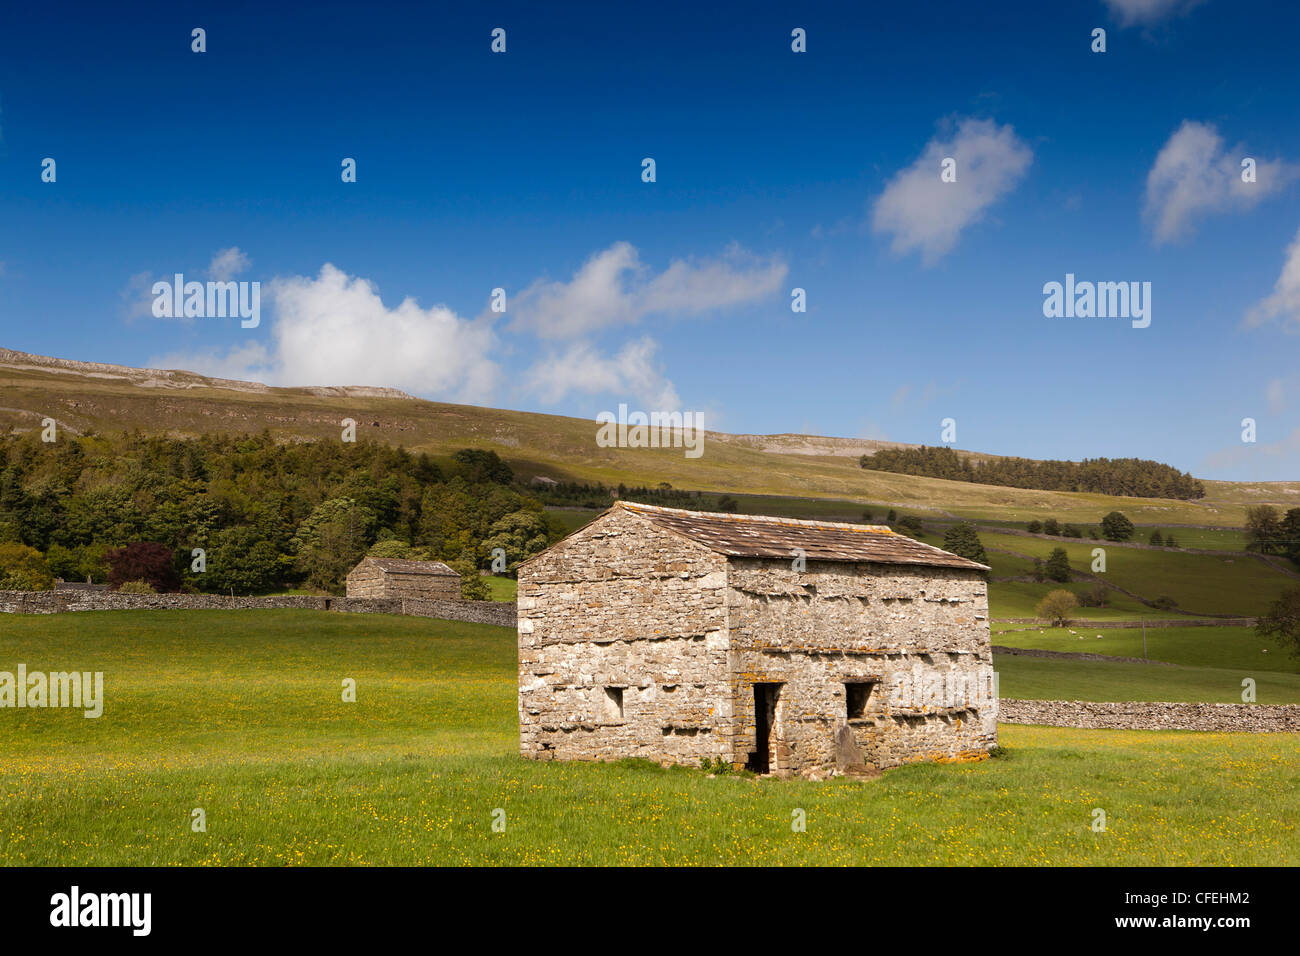 Royaume-uni, Angleterre, dans le Yorkshire, Wensleydale, Askrigg, grange en pierre dans le champ ci-dessous pré cicatrice bleu Banque D'Images